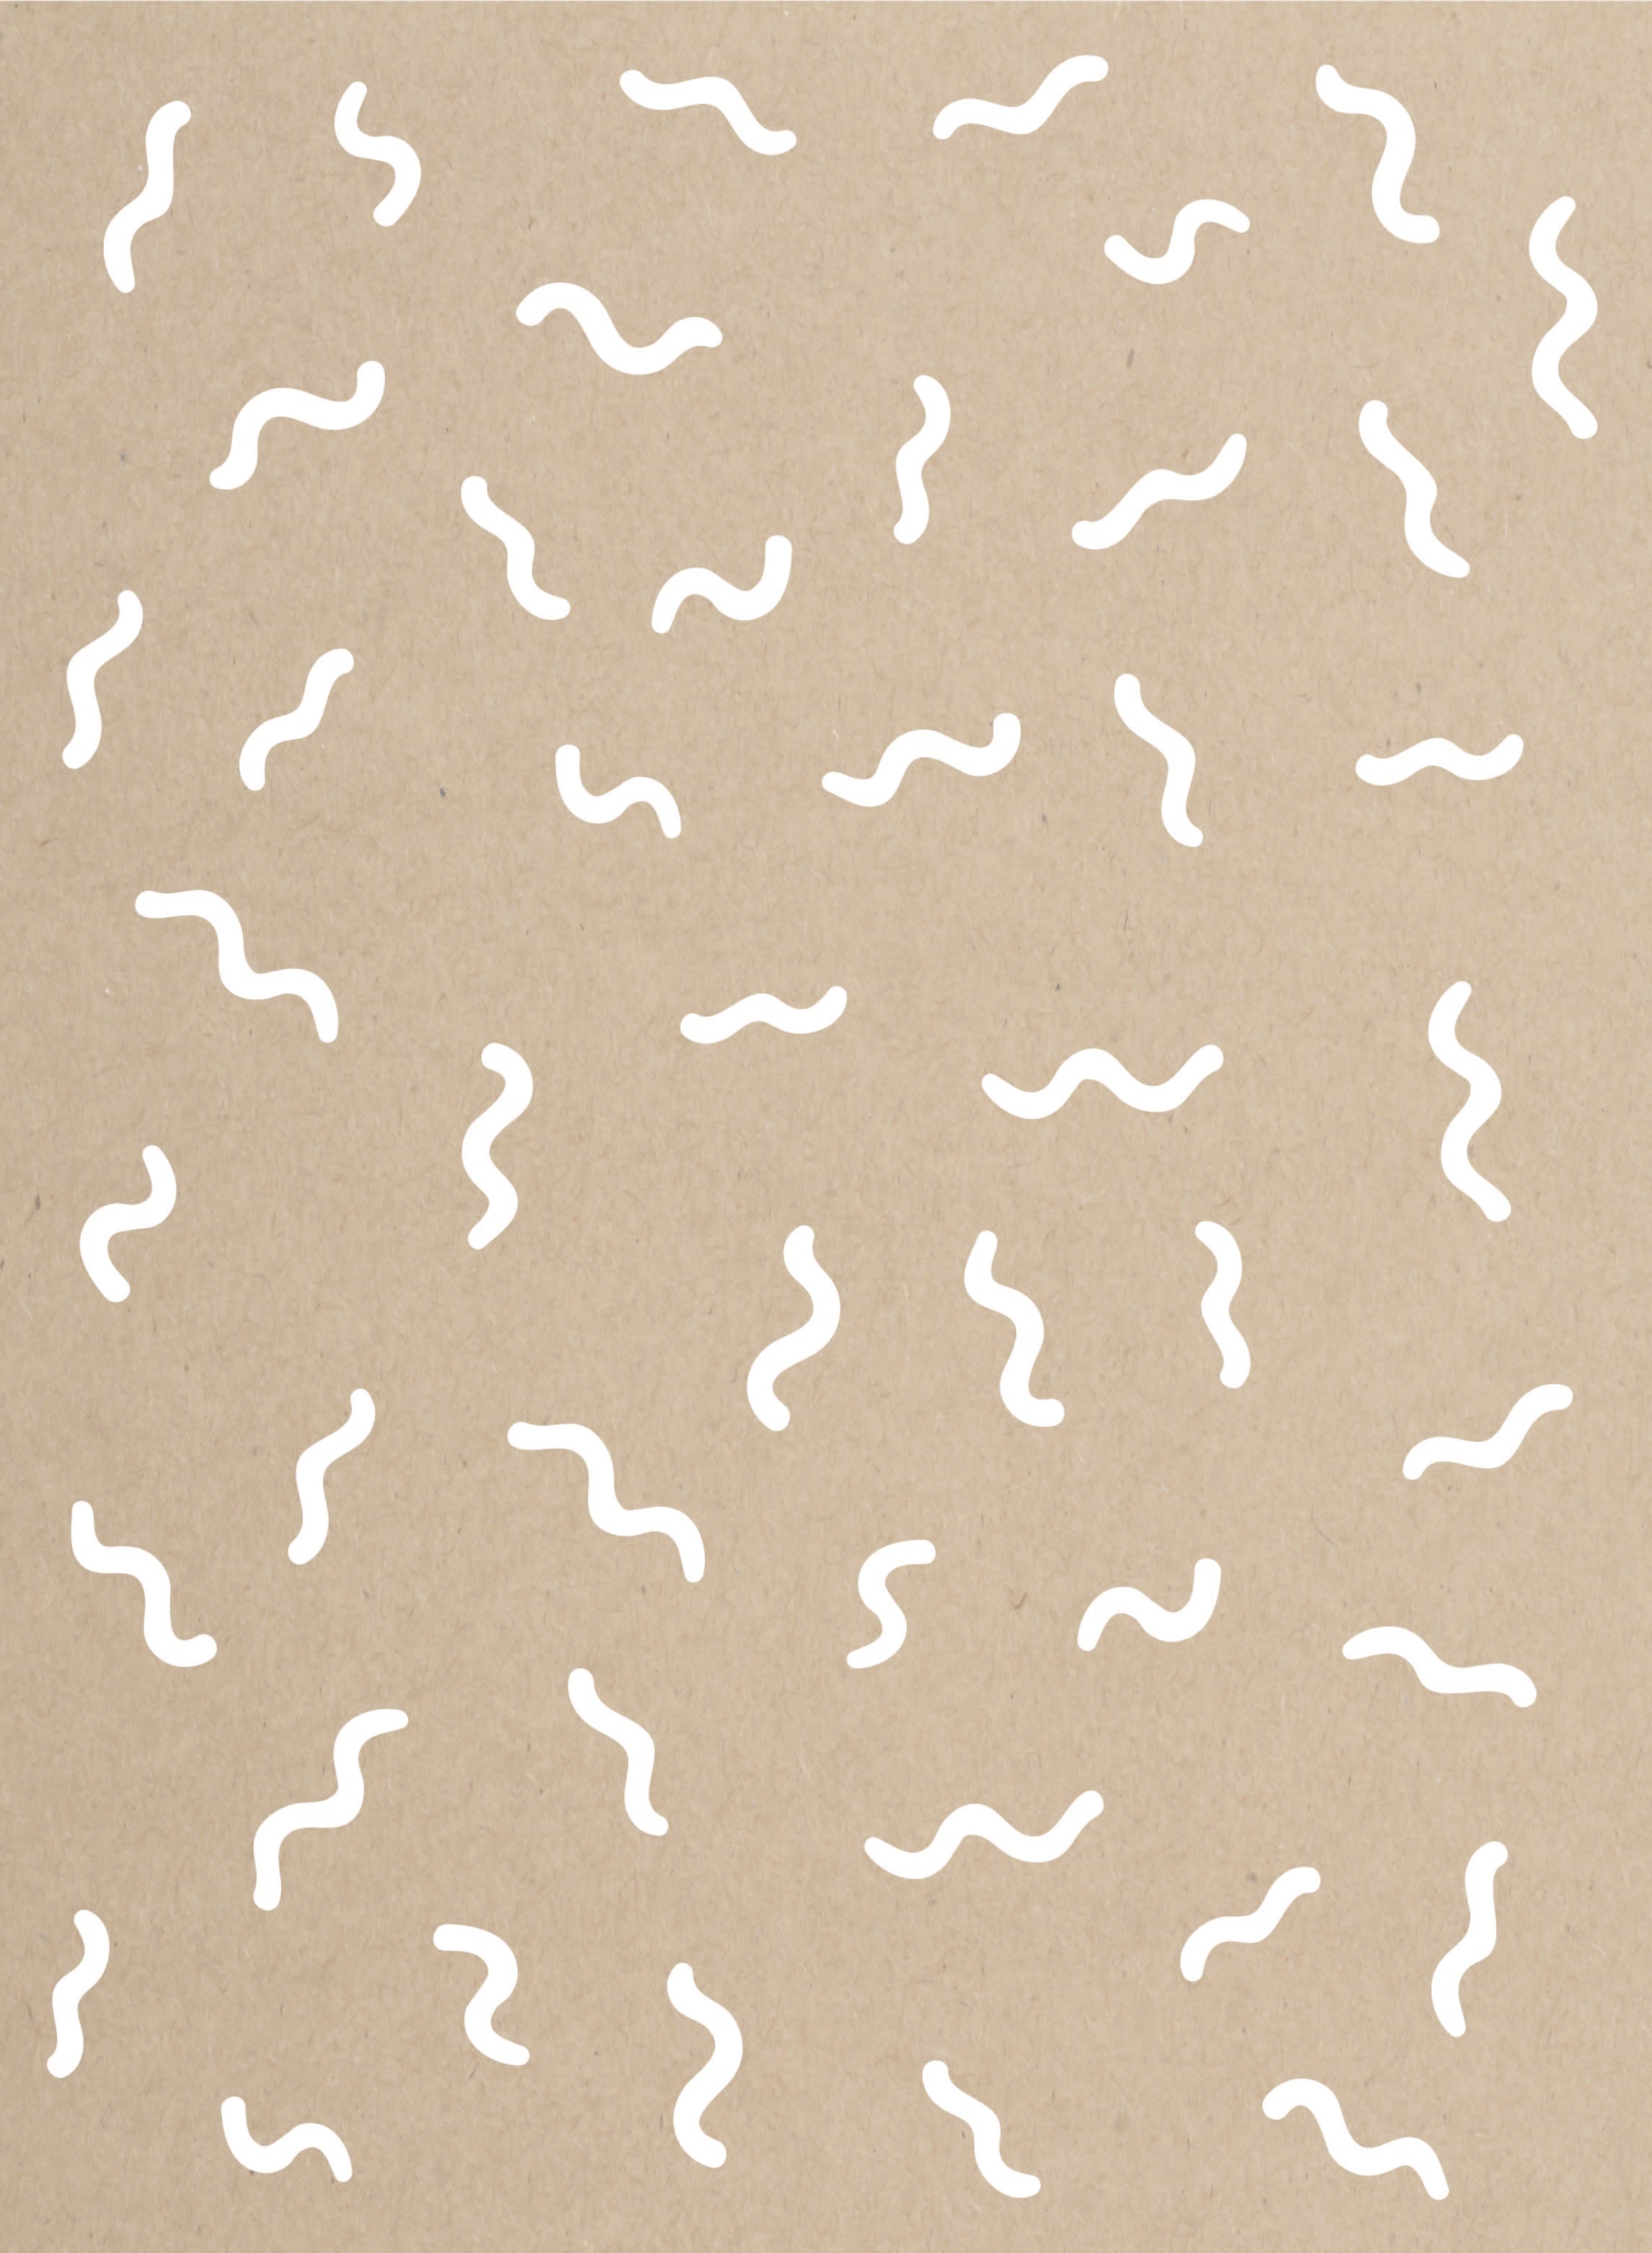 Achtergrondafbeelding met een illustratie van witte wormen op karton